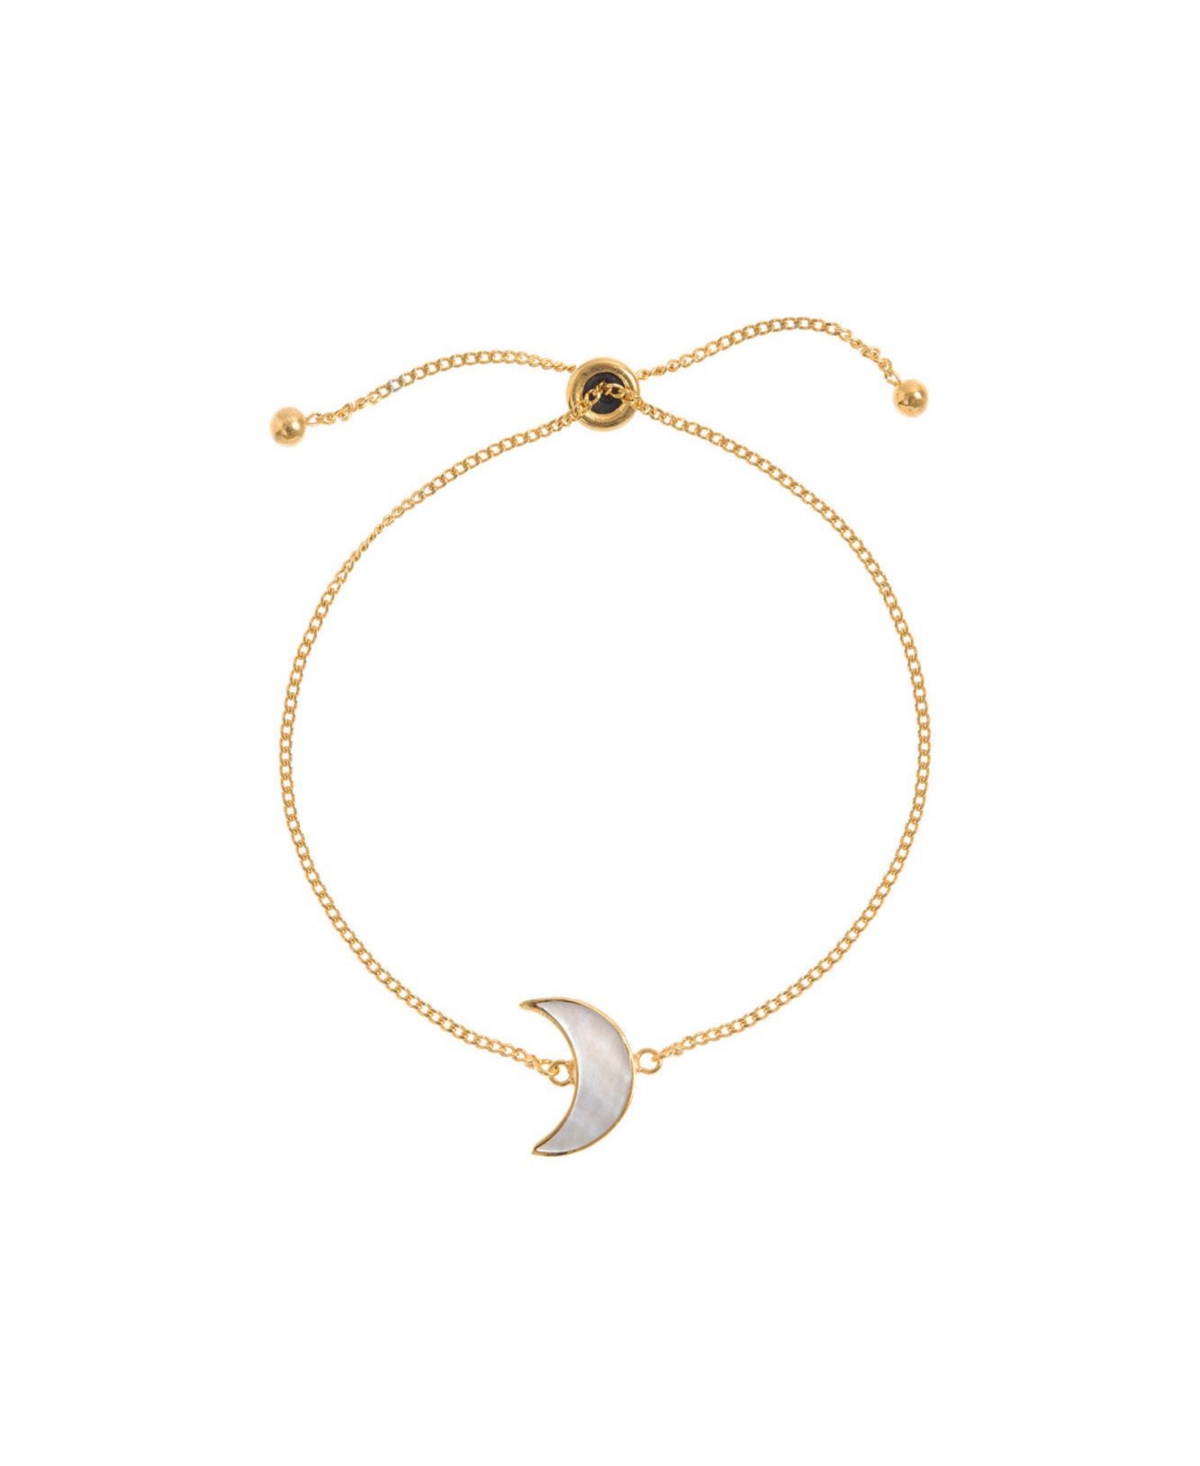 Adjustable Gold Moon Bracelet - Gold